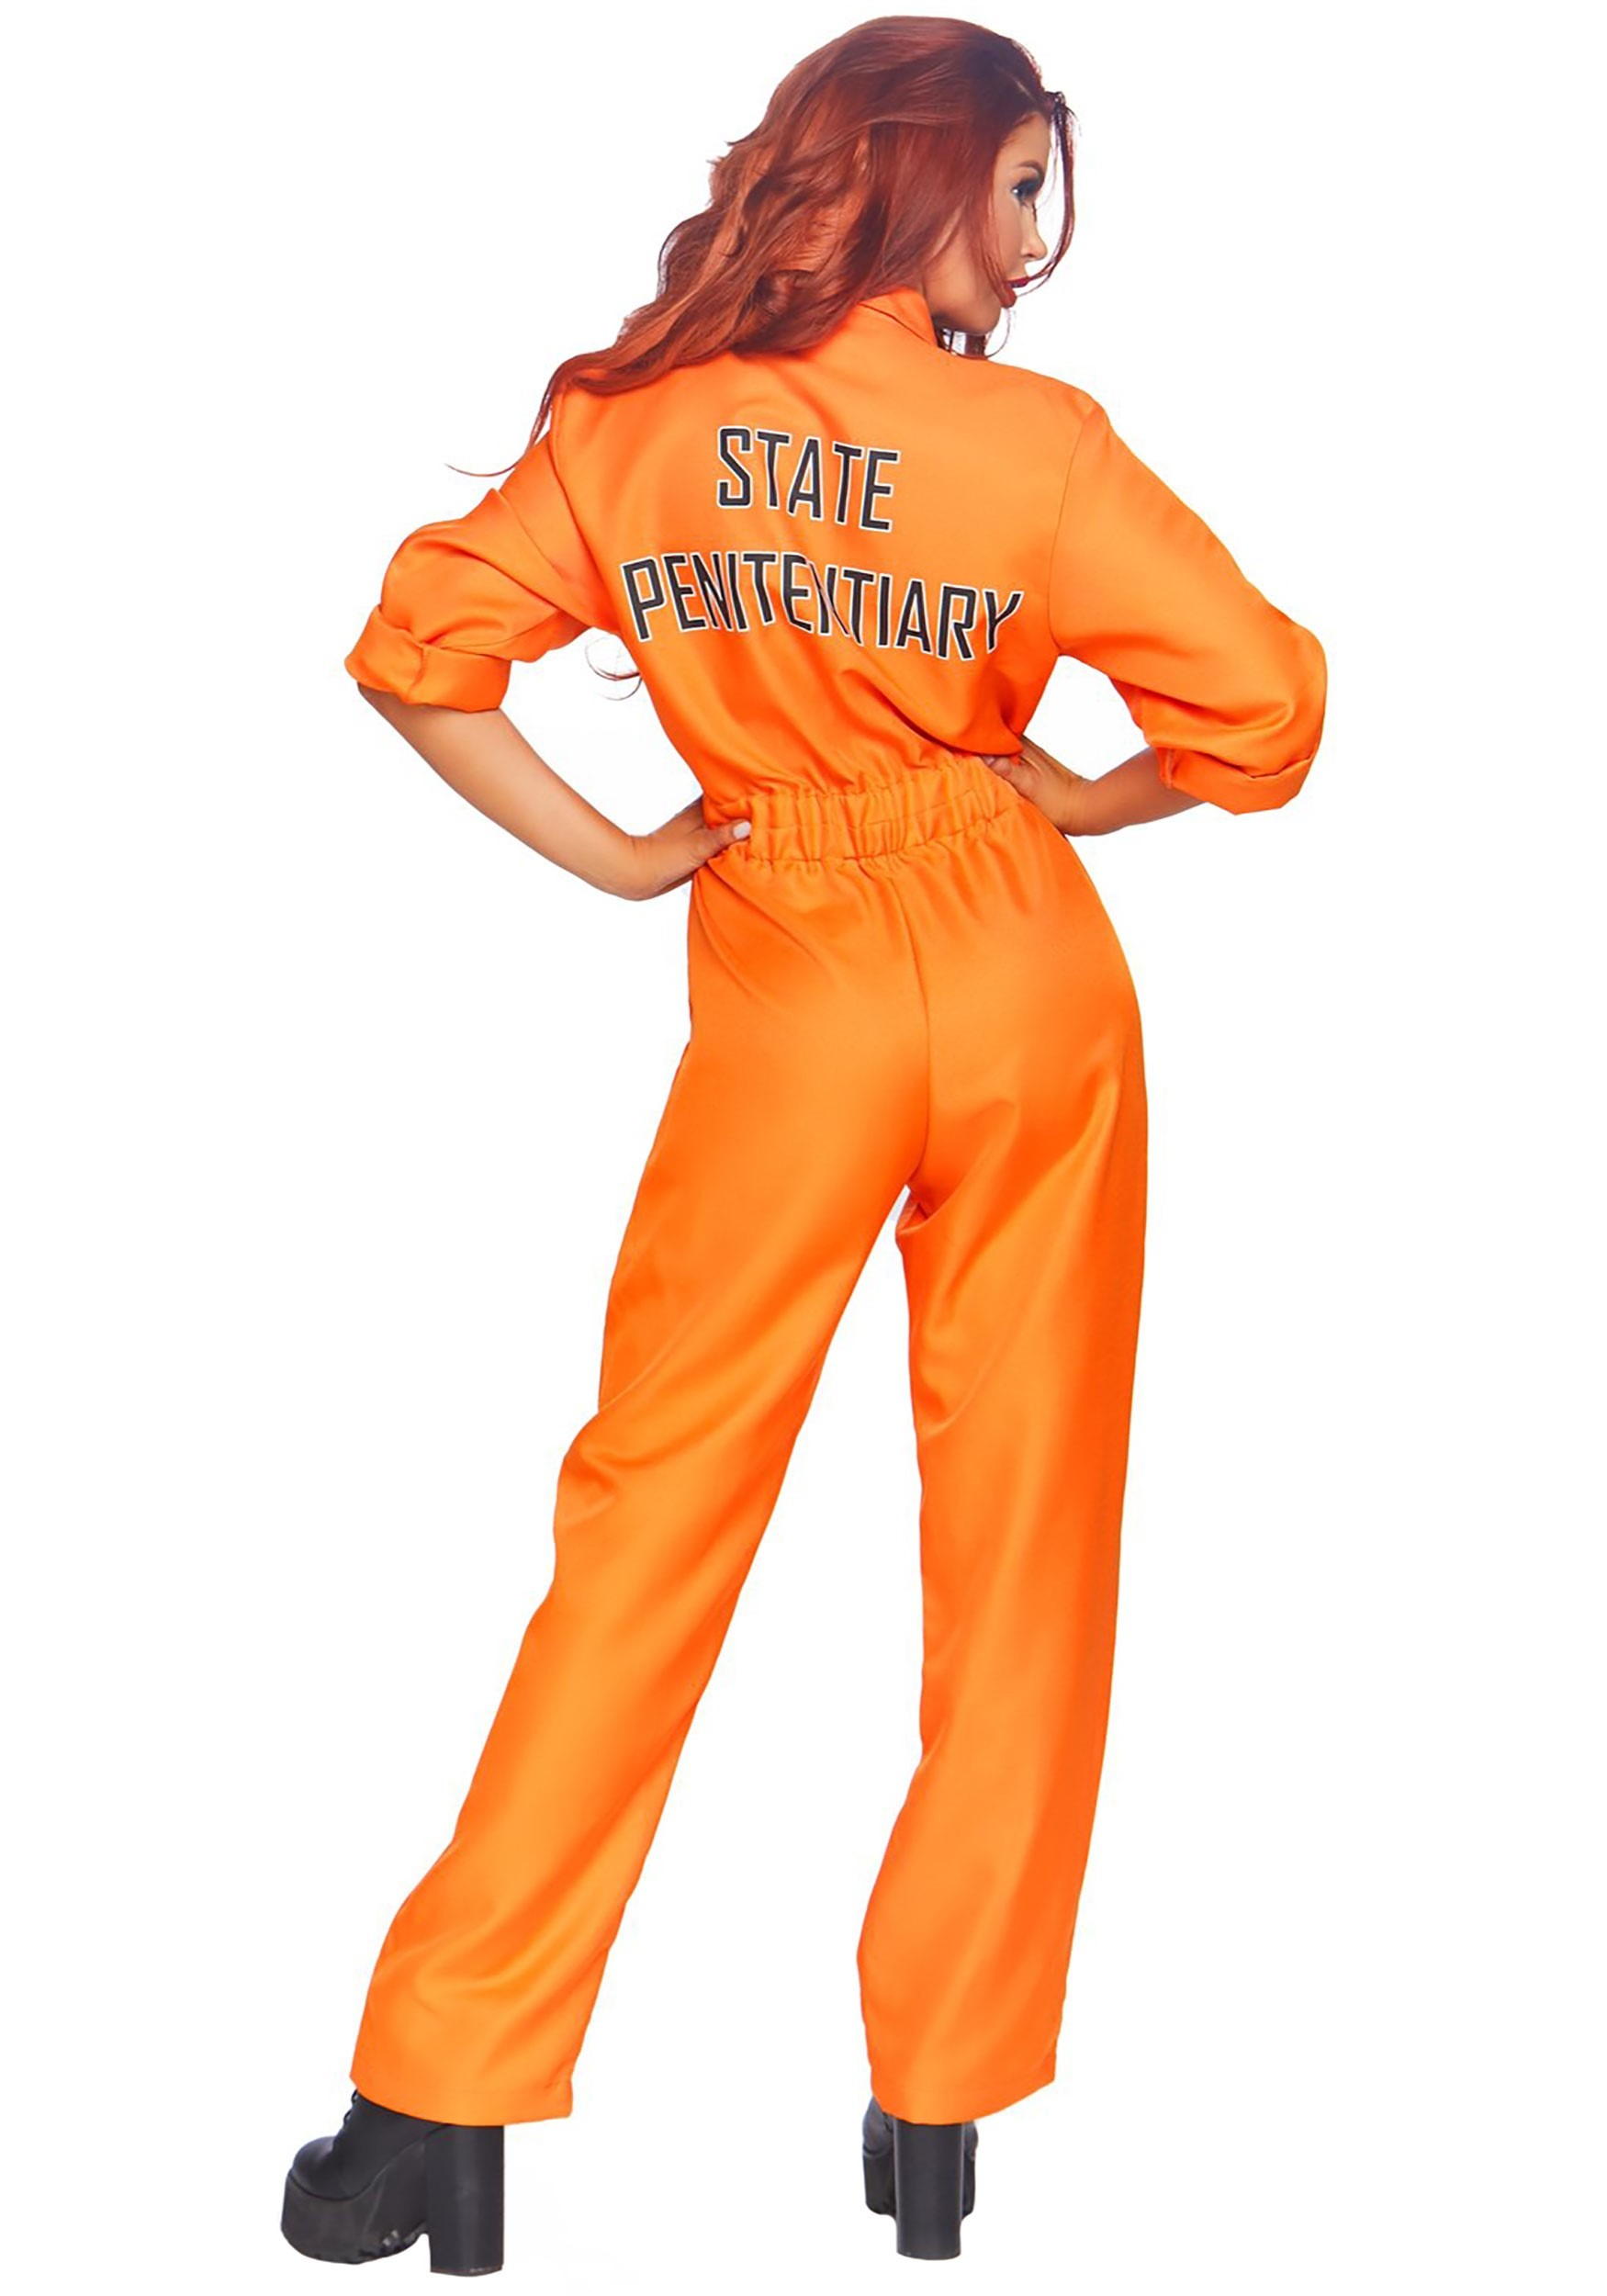 Prisoner Costume - I Love Magic Design costume suit Prison Dress-Up-America...